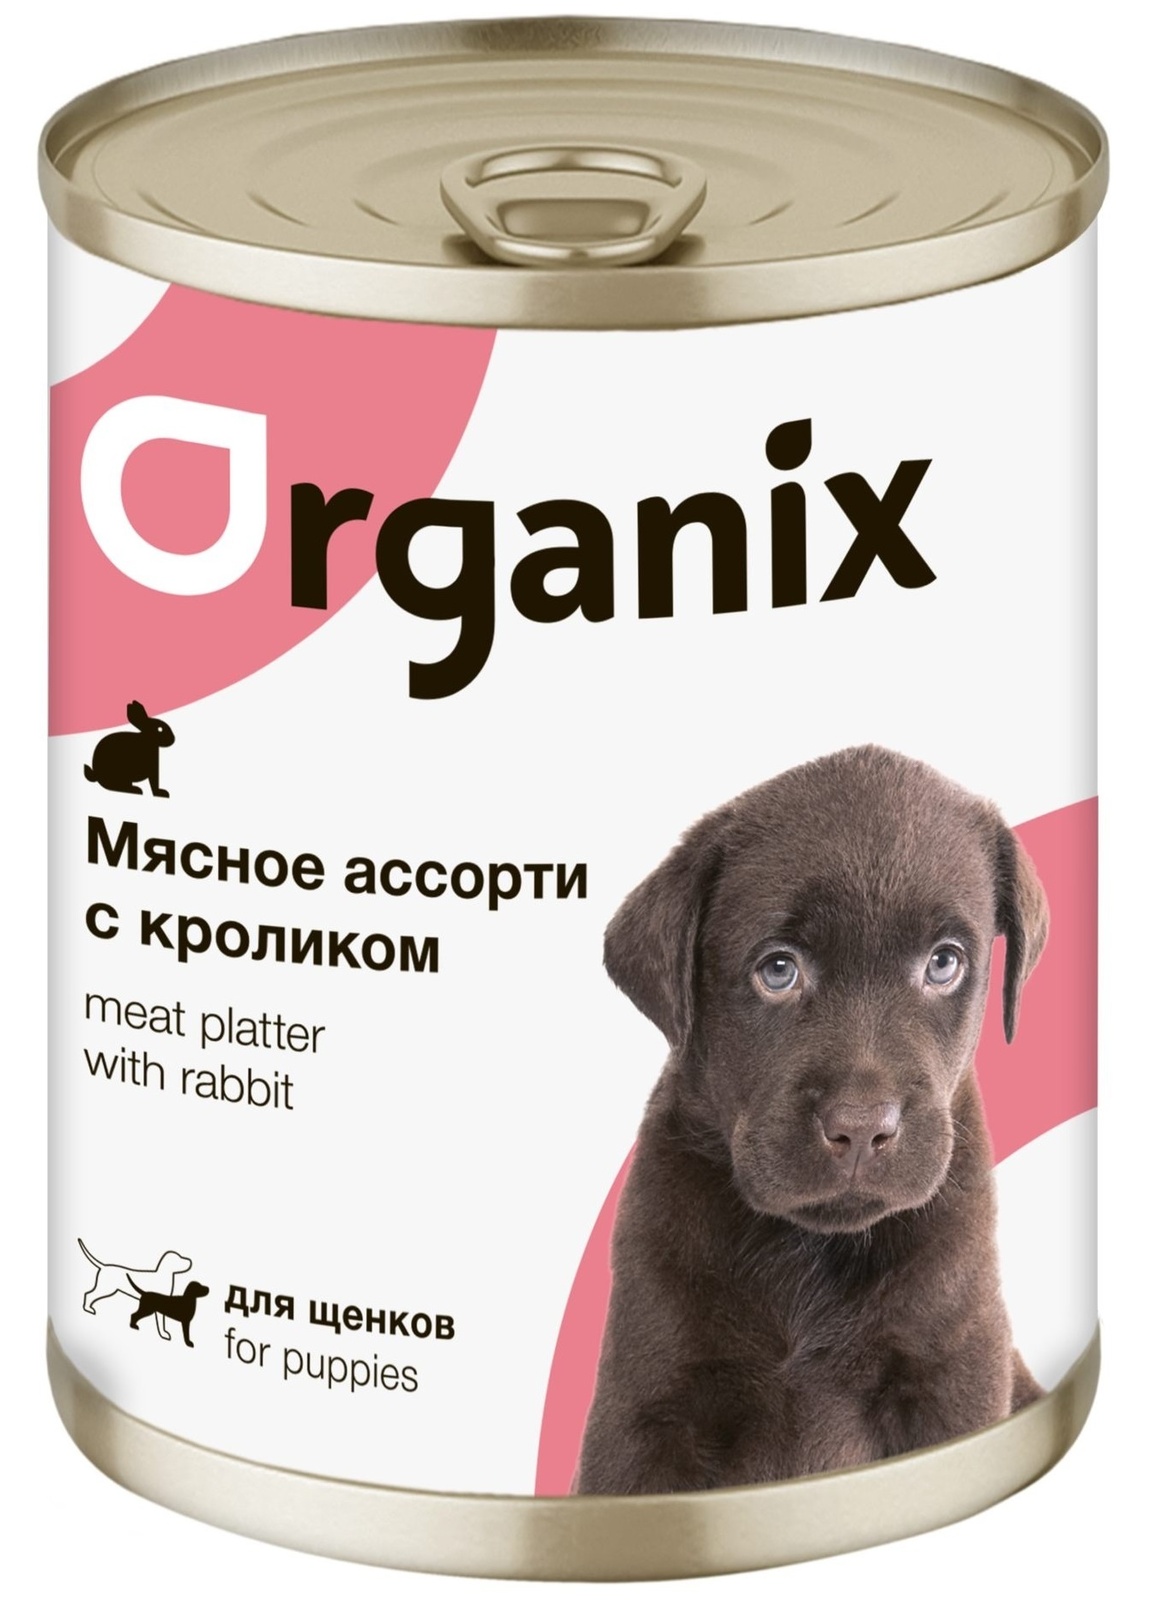 Organix консервы Organix консервы для щенков Мясное ассорти с кроликом (400 г) organix консервы organix монобелковые премиум консервы для собак с гусем 400 г